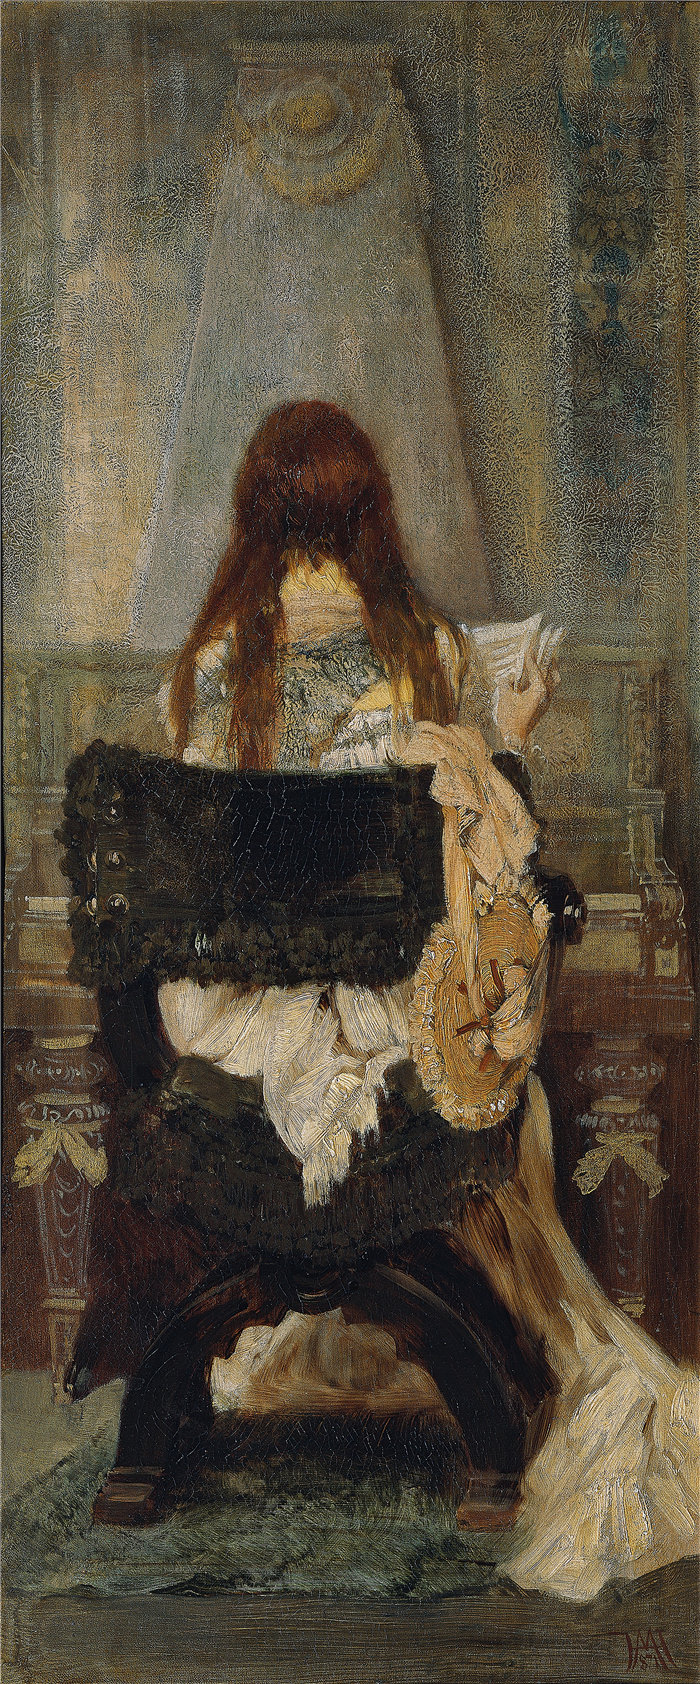 汉斯·马卡特 (Hans Makart，奥地利画家)-斯内特夫人 (1871)